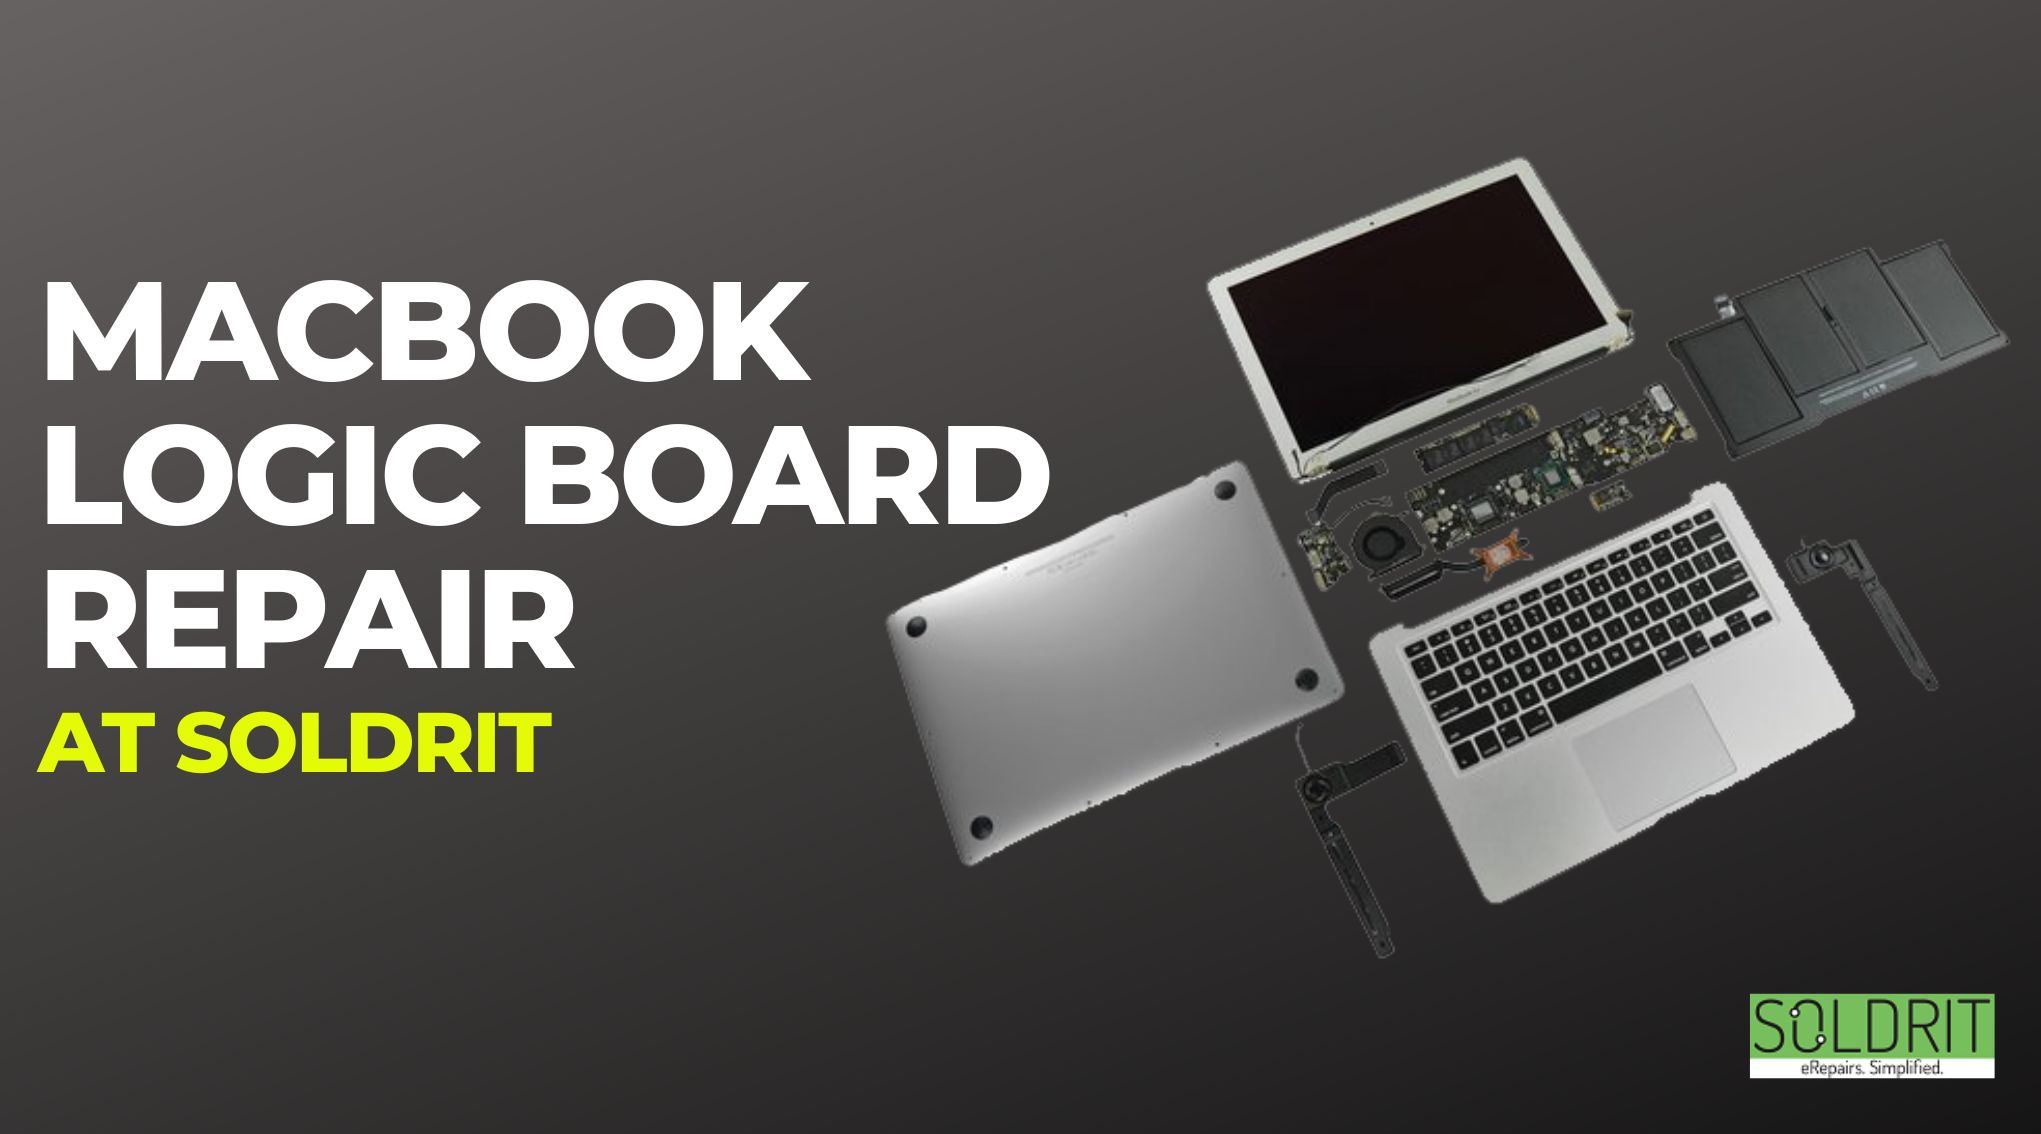 MacBook logic board repair at Soldrit